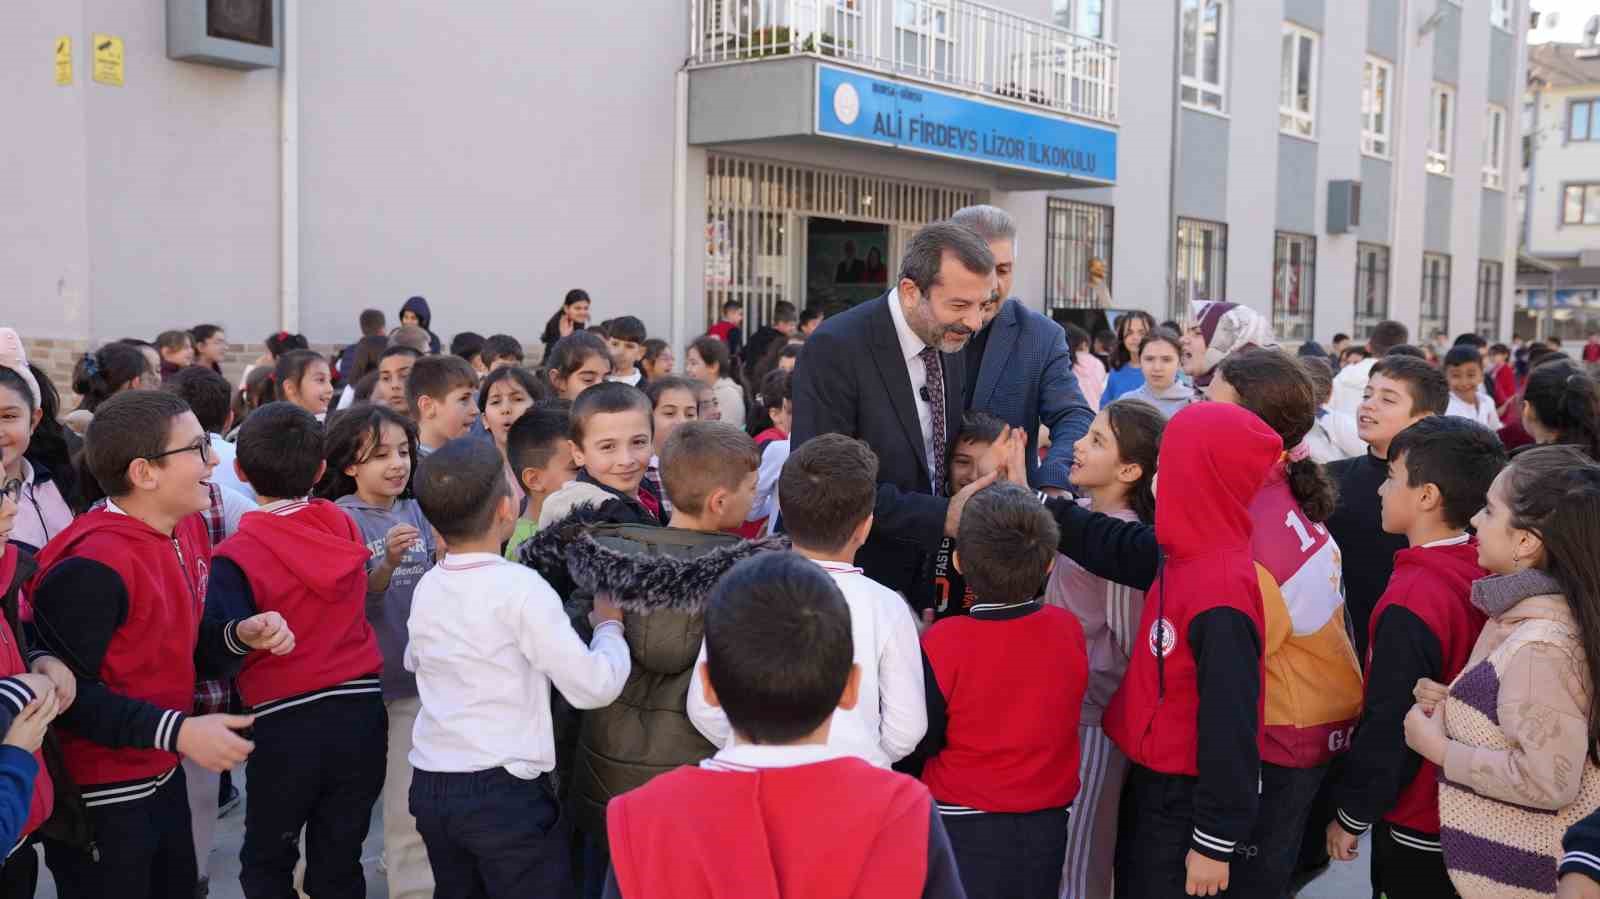 Gürsu’daki okullara Başkan Işık’tan spor desteği